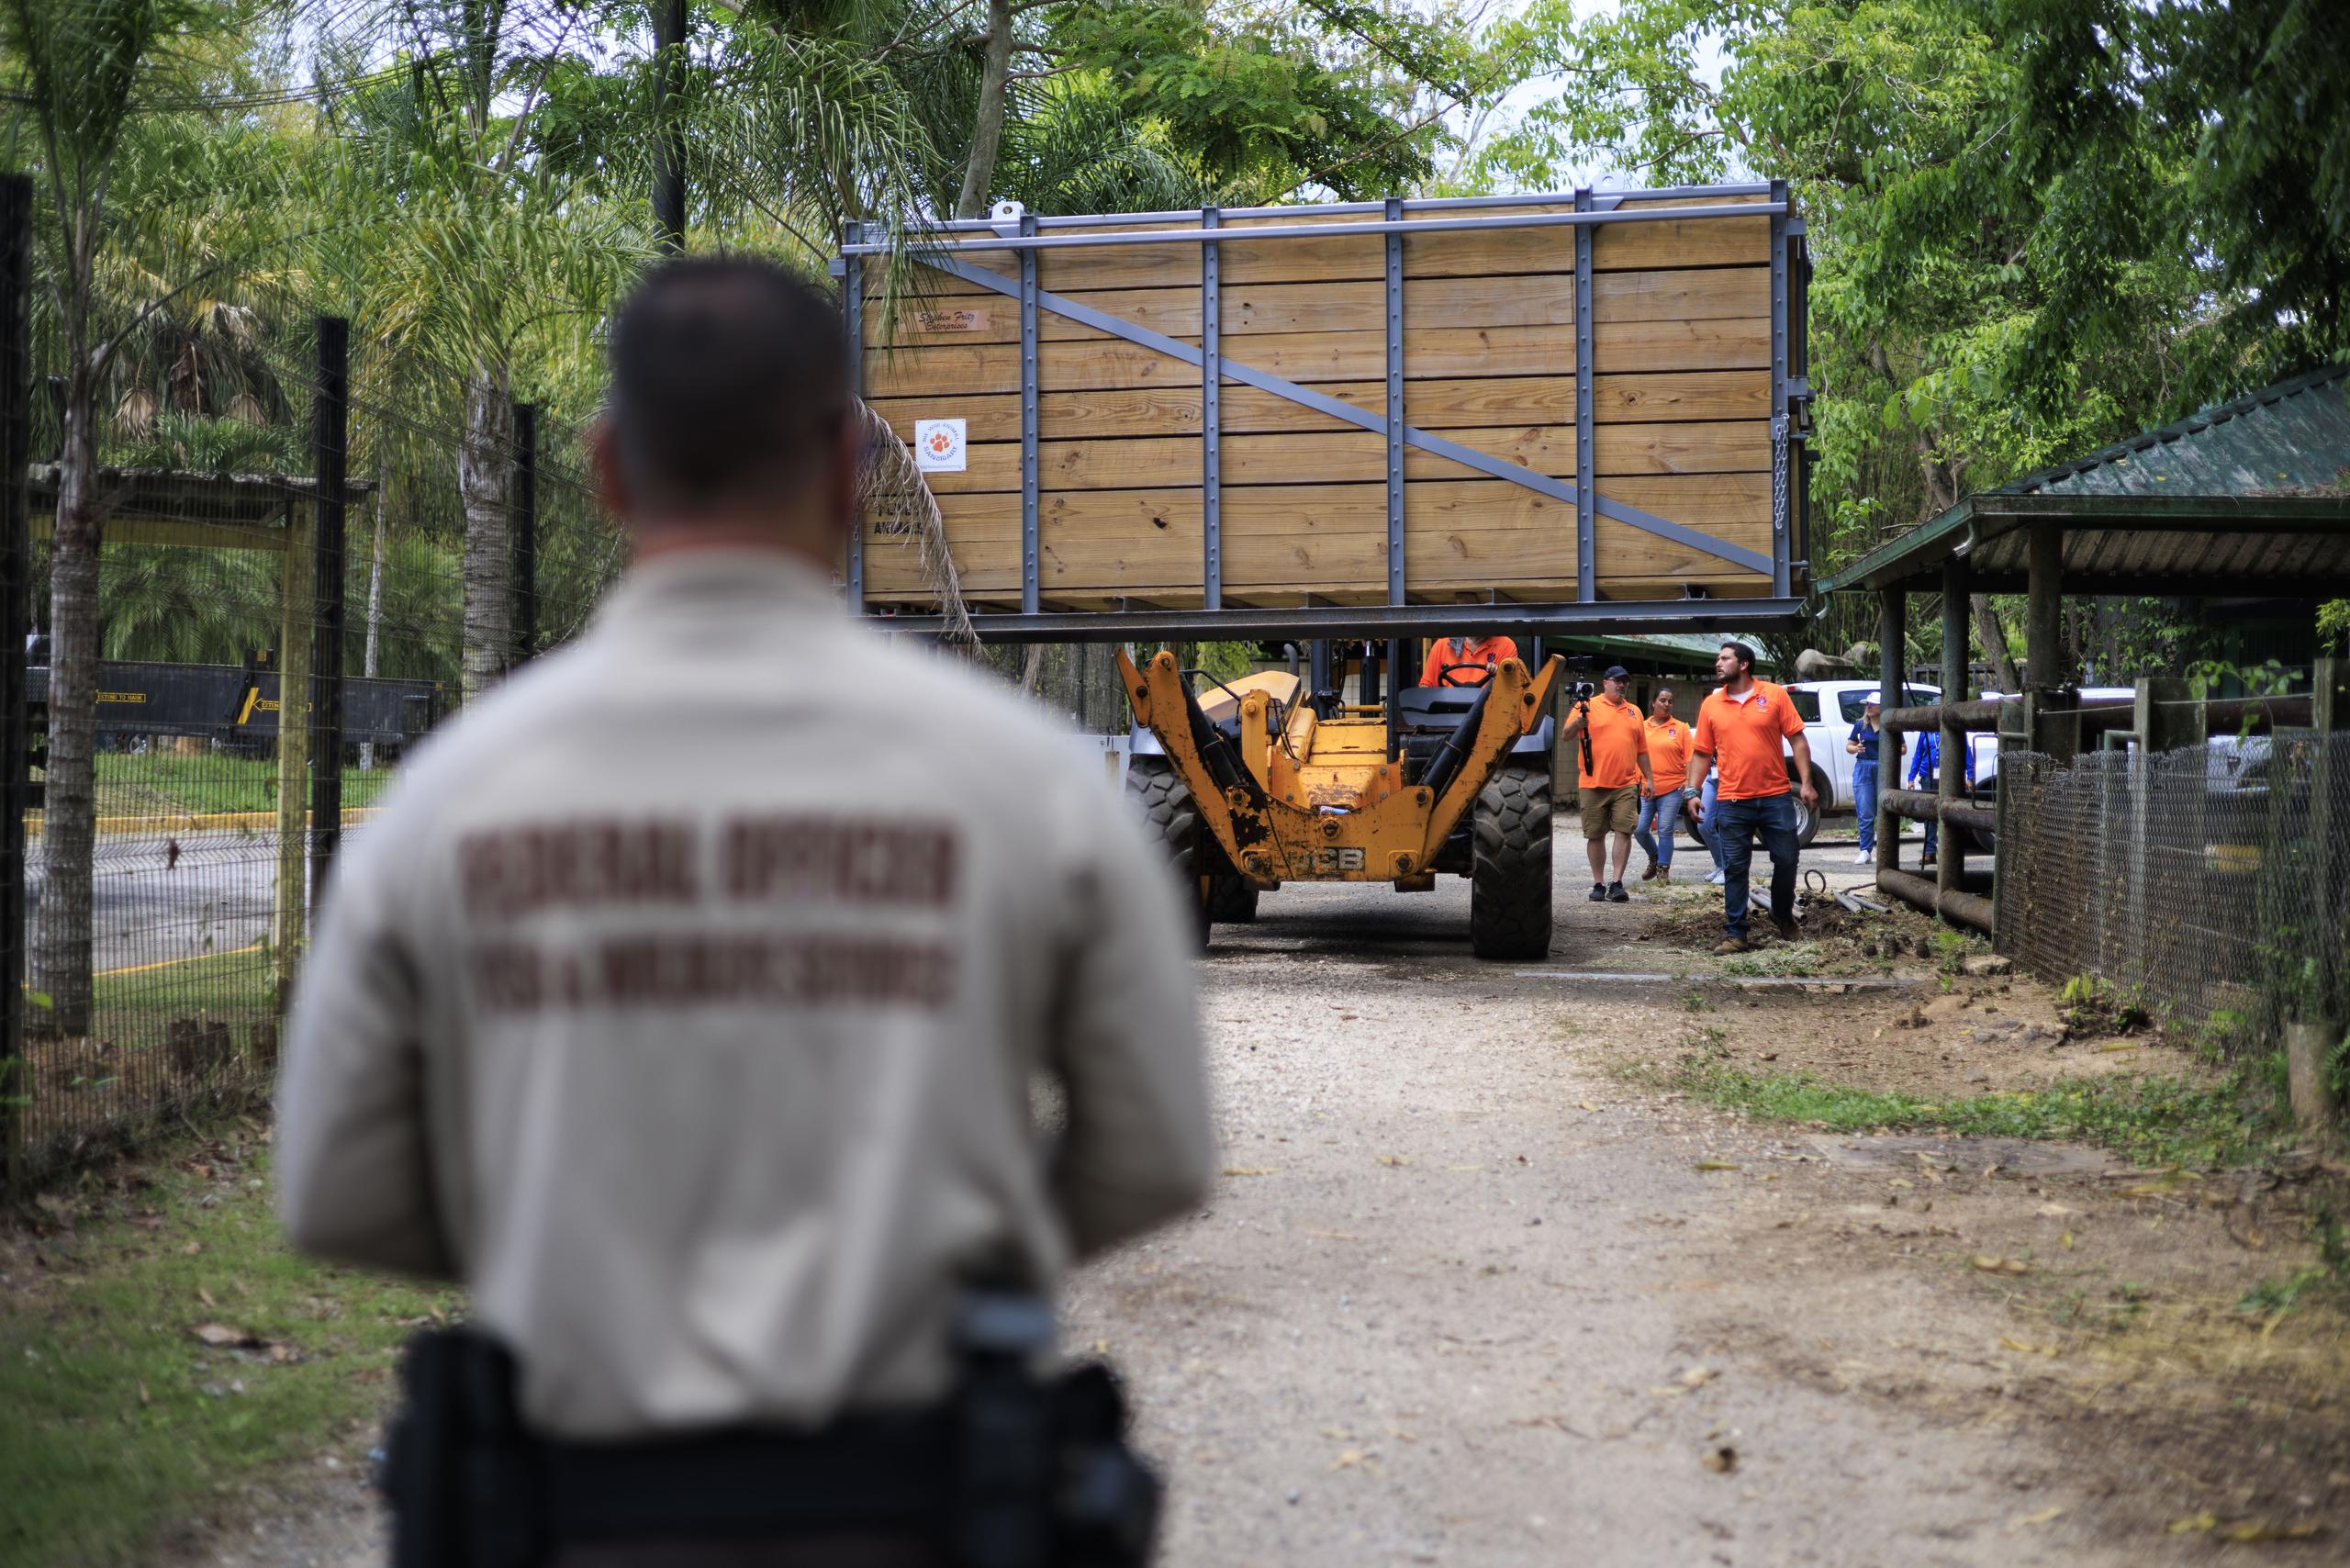 En marzo de 2023 se anunció el cierre permanente del Zoológico de Mayagüez. La noticia se divulgó tras años de reportes negativos contra el DRNA por el trato que se le daba a los animales y los problemas operativos que allí se registraban, los cuales se agravaron con los daños que ocasionó el huracán María en septiembre de 2017.